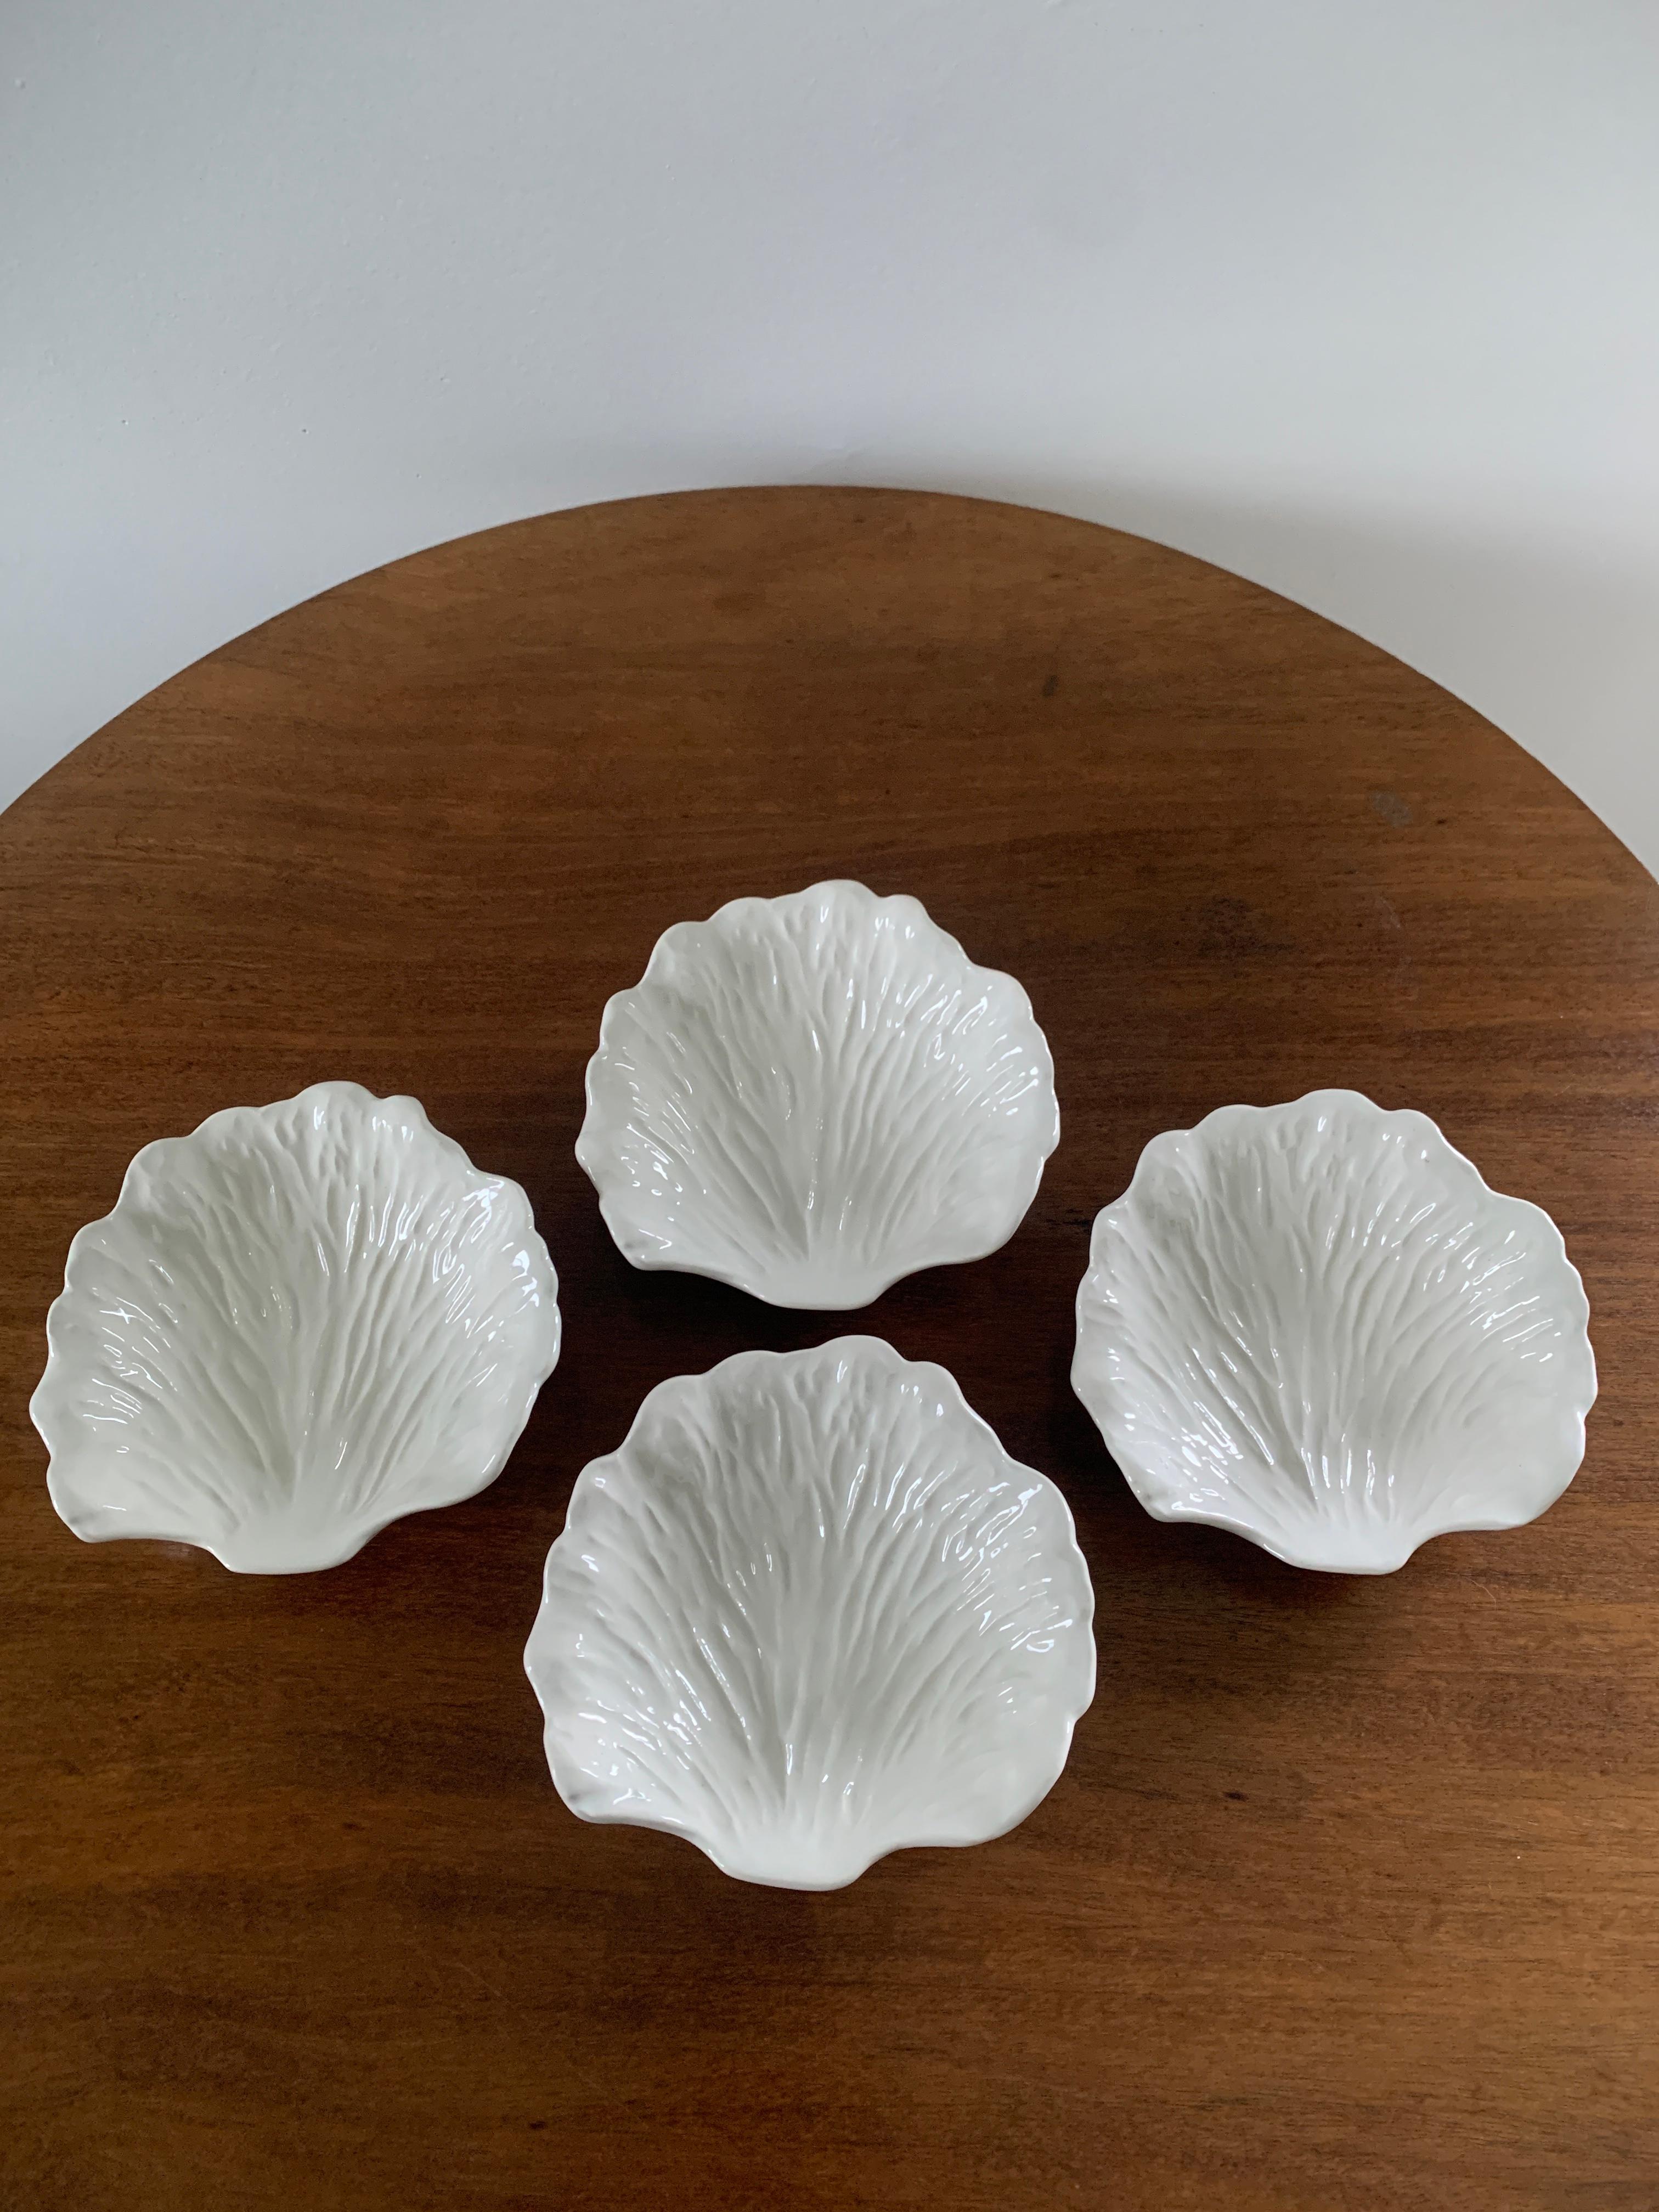 Un ensemble de quatre belles assiettes à choux en porcelaine blanche

Circa 1960s

Mesures : 6,25 